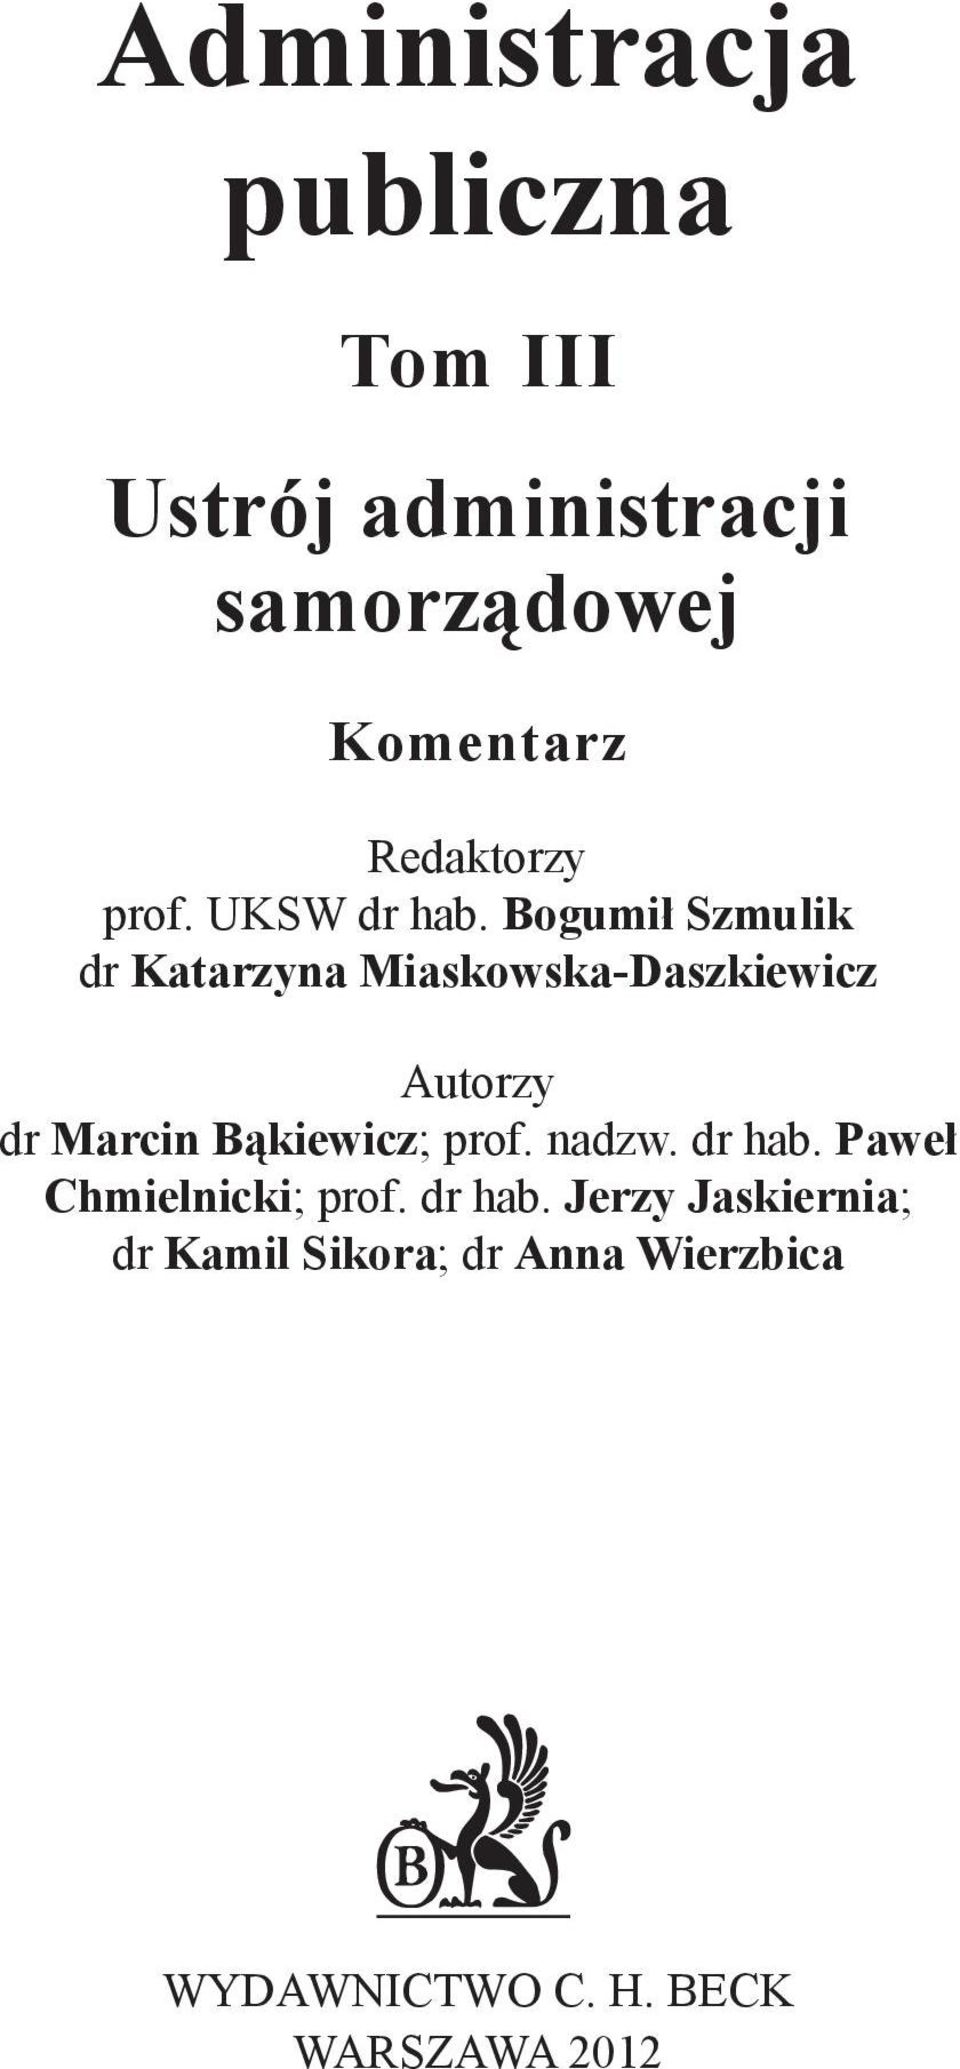 Autorzy dr Marcin Bąkiewicz; prof nadzw dr hab Paweł Chmielnicki; prof dr hab